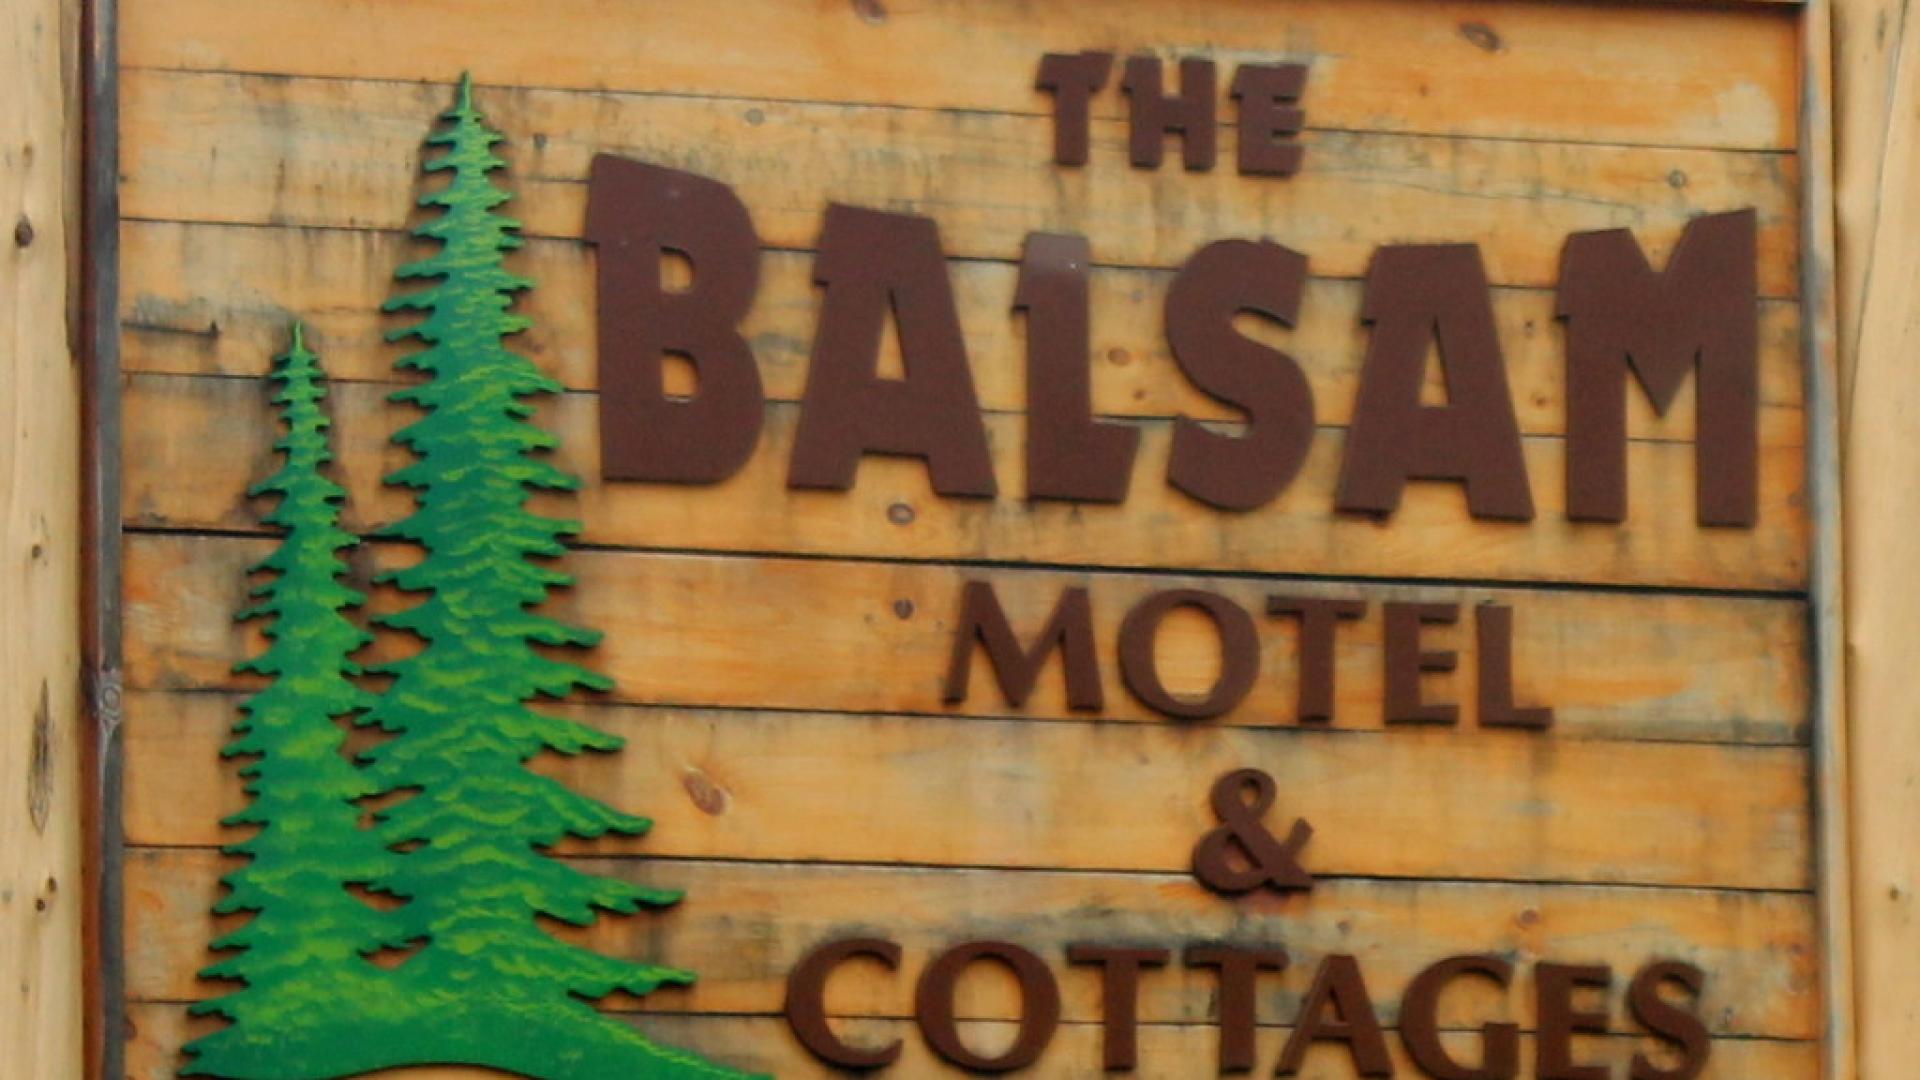 Balsam Motel & Cottages